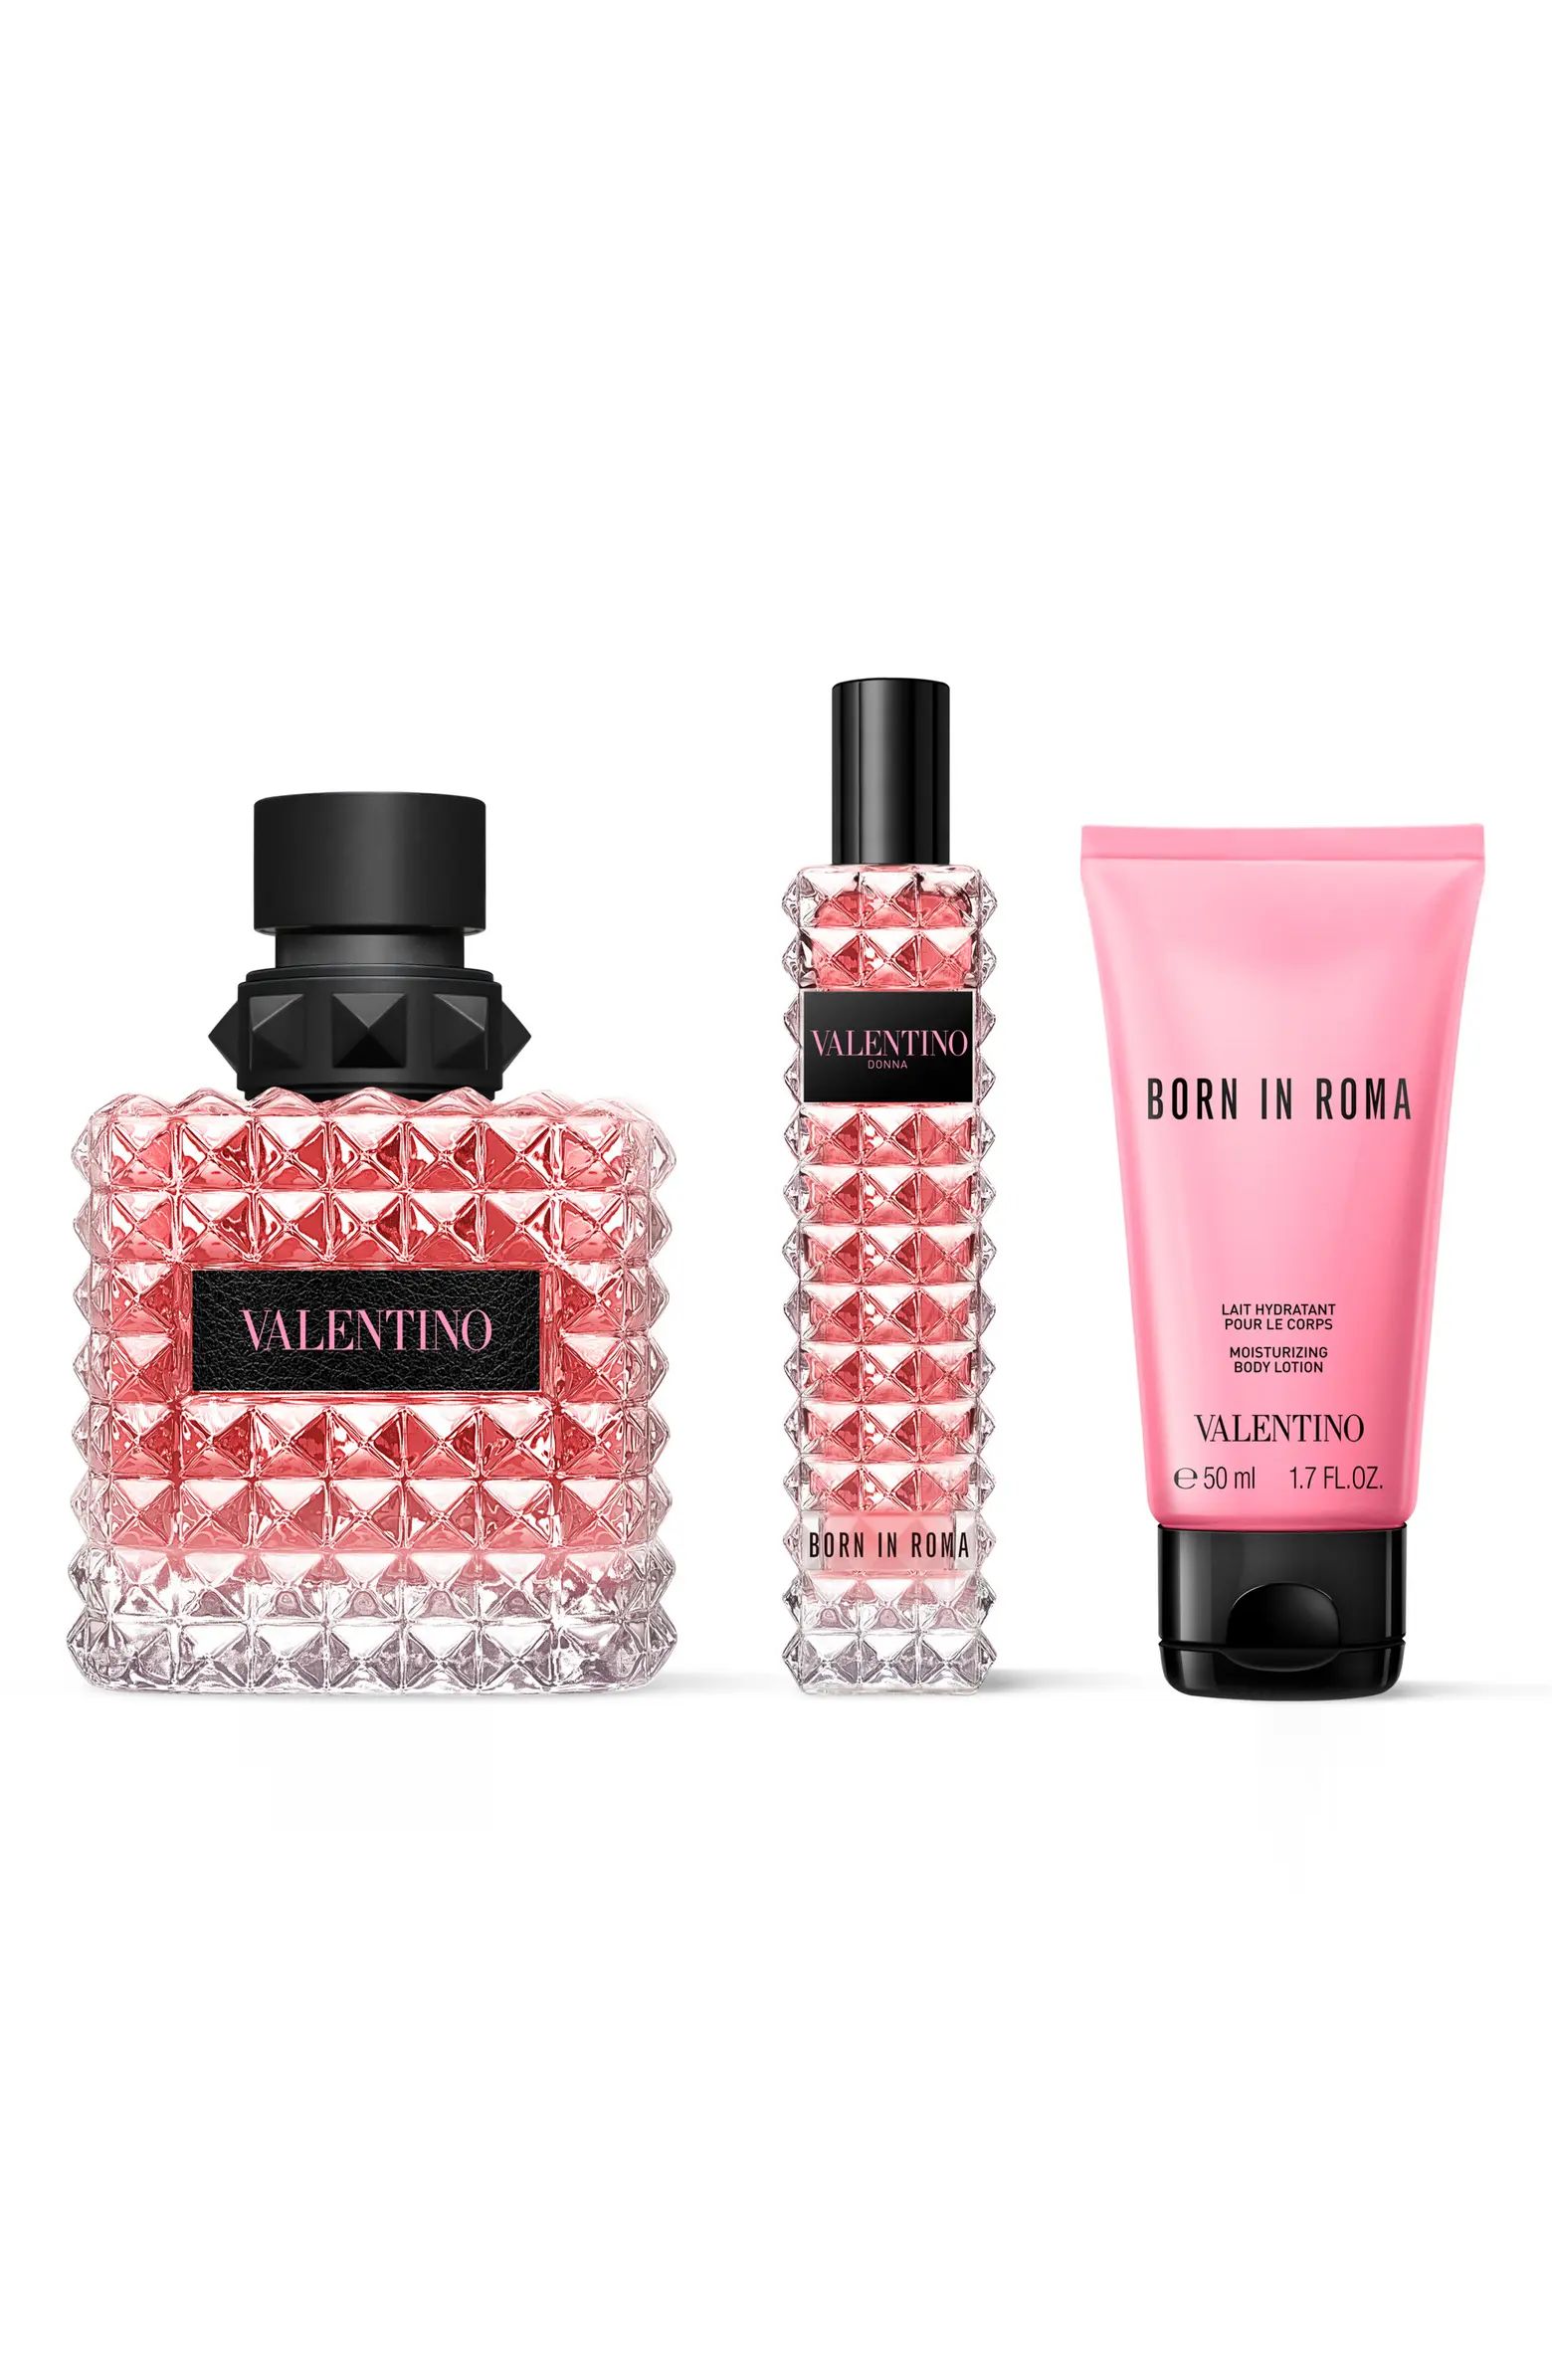 Donna Born in Roma Eau de Parfum 3-Piece Gift Set $233 Value | Nordstrom